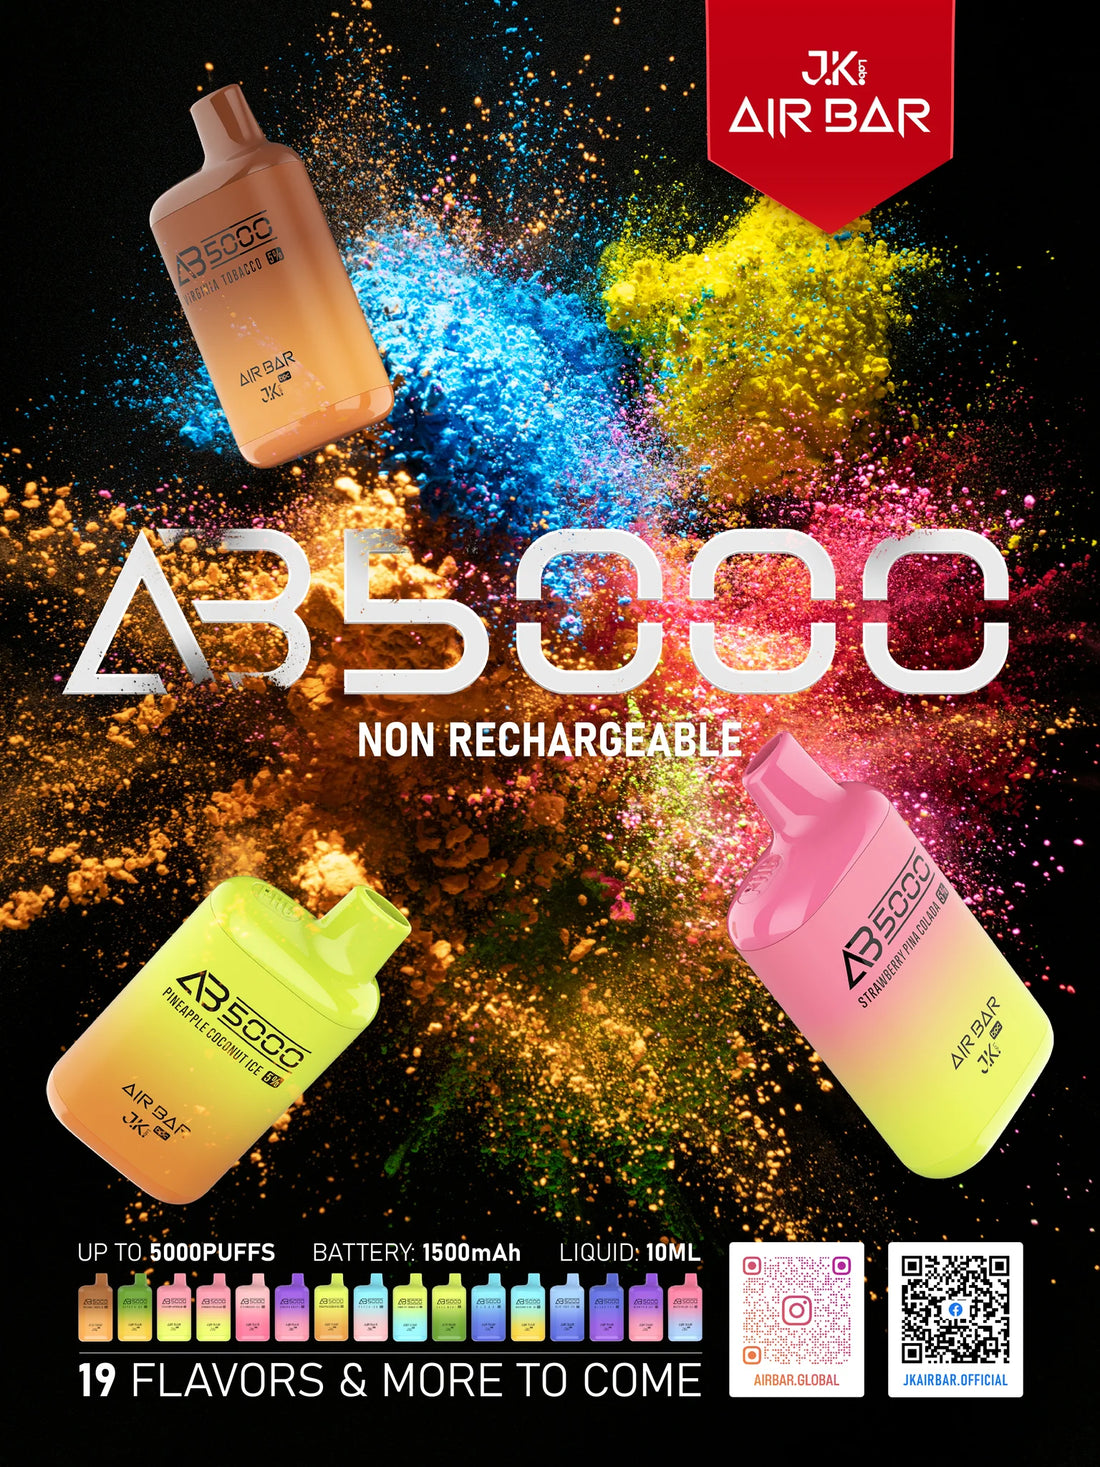 Air Bar AB5000 Puff Disposable Vape - Which Flavor to Choose?